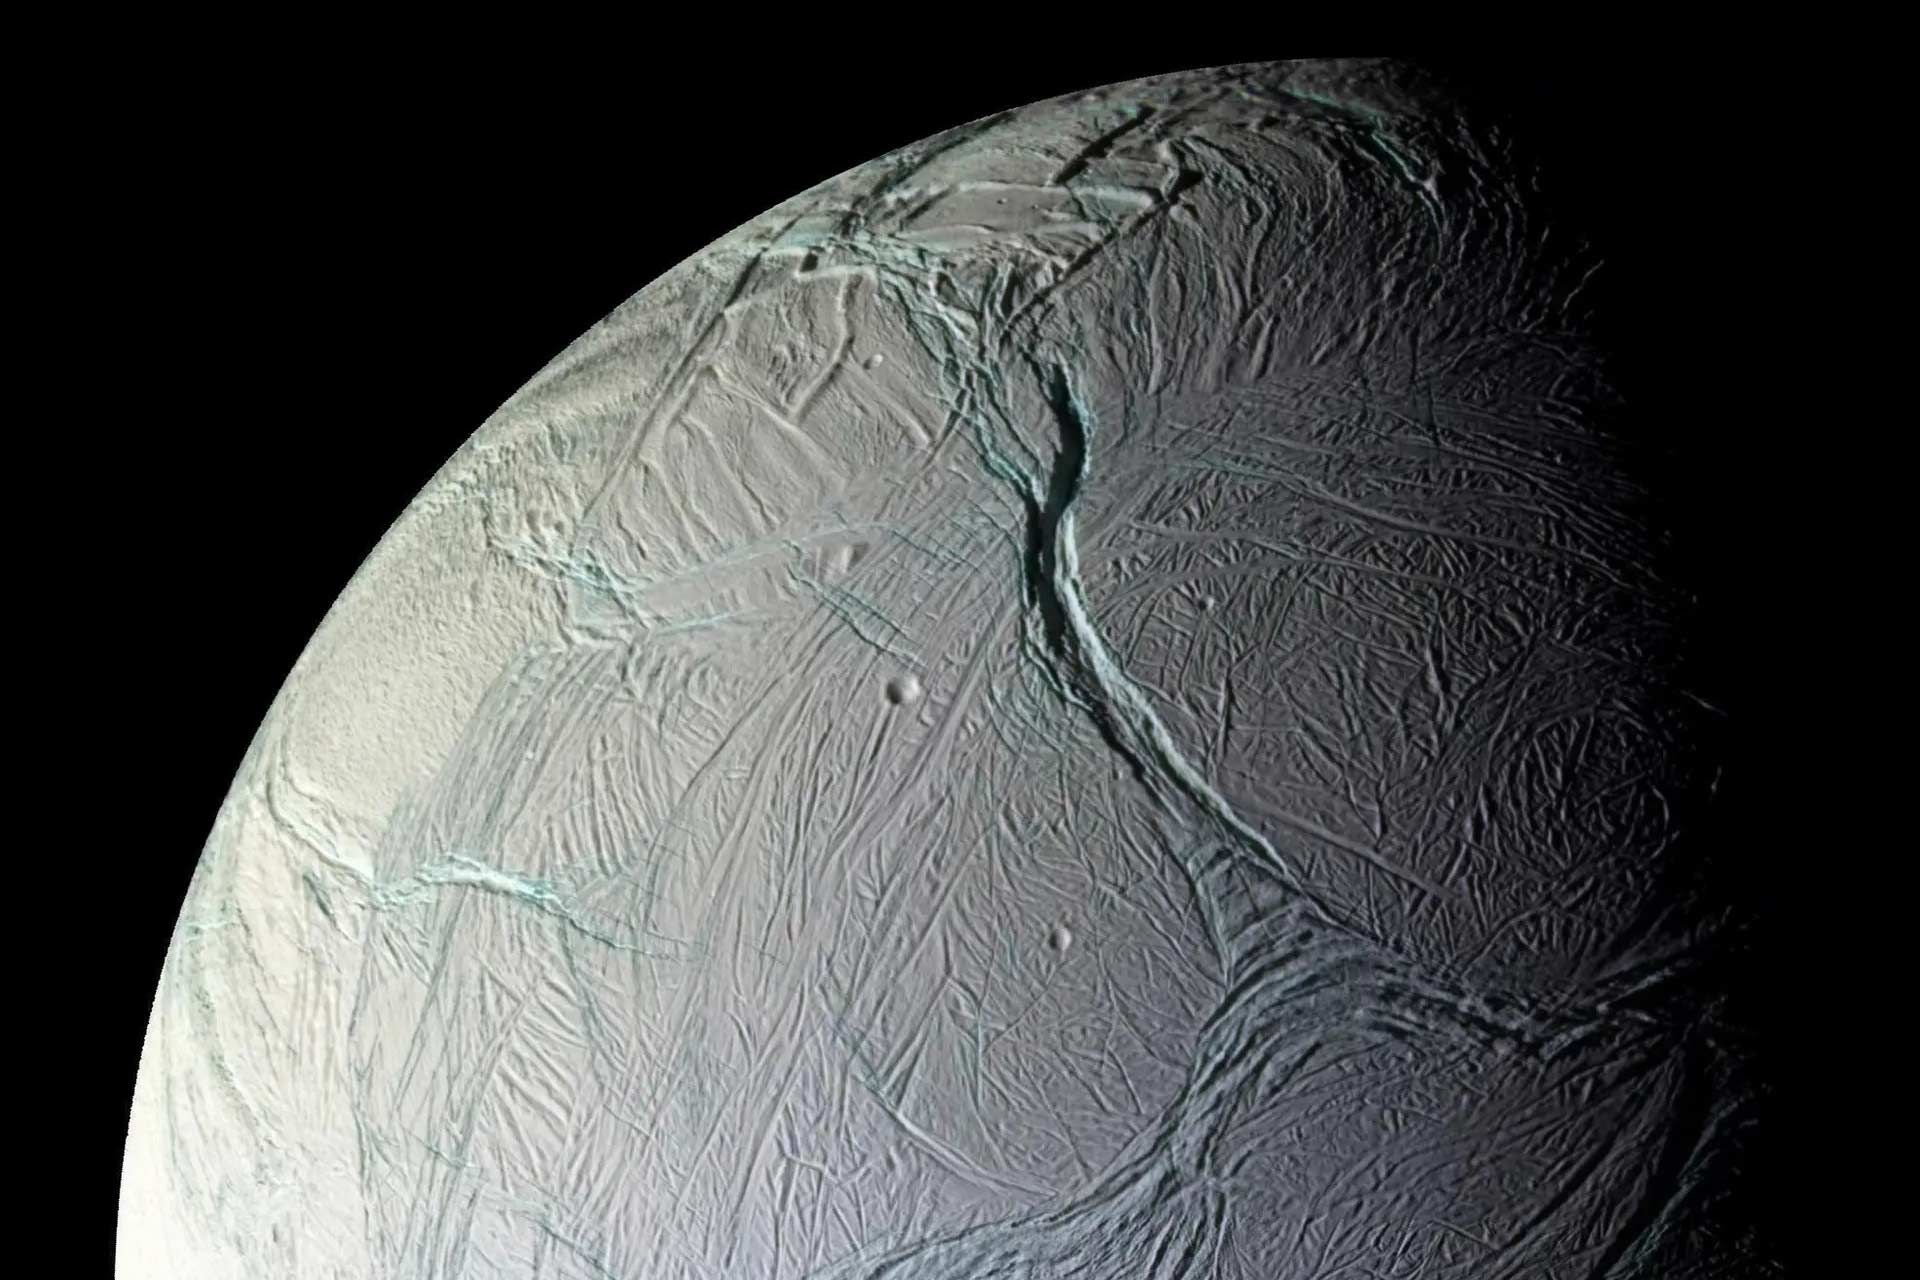 انسلادوس قمر زحل از نگاه فضاپیمای کاسینی